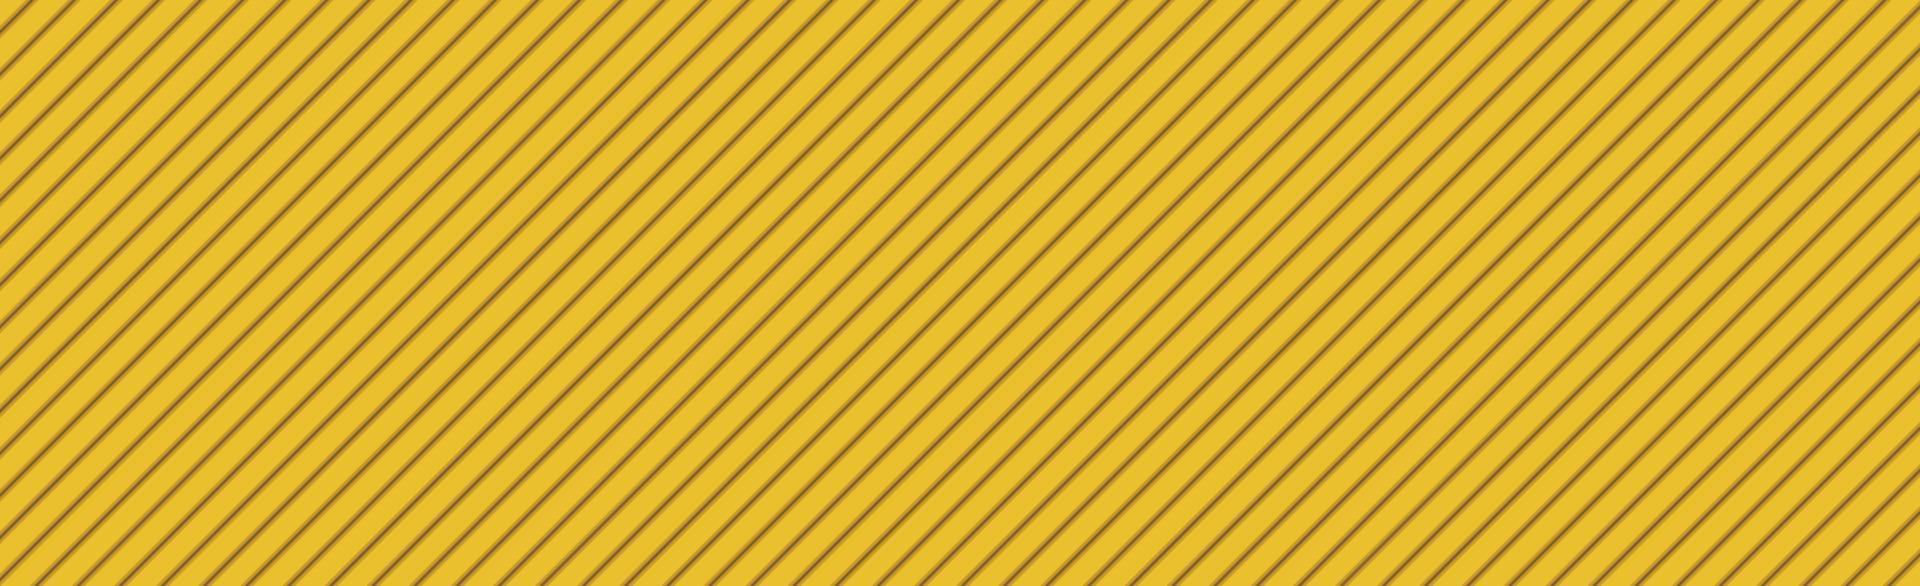 fond de texture jaune-orange abstraite panoramique lignes inclinées - vecteur